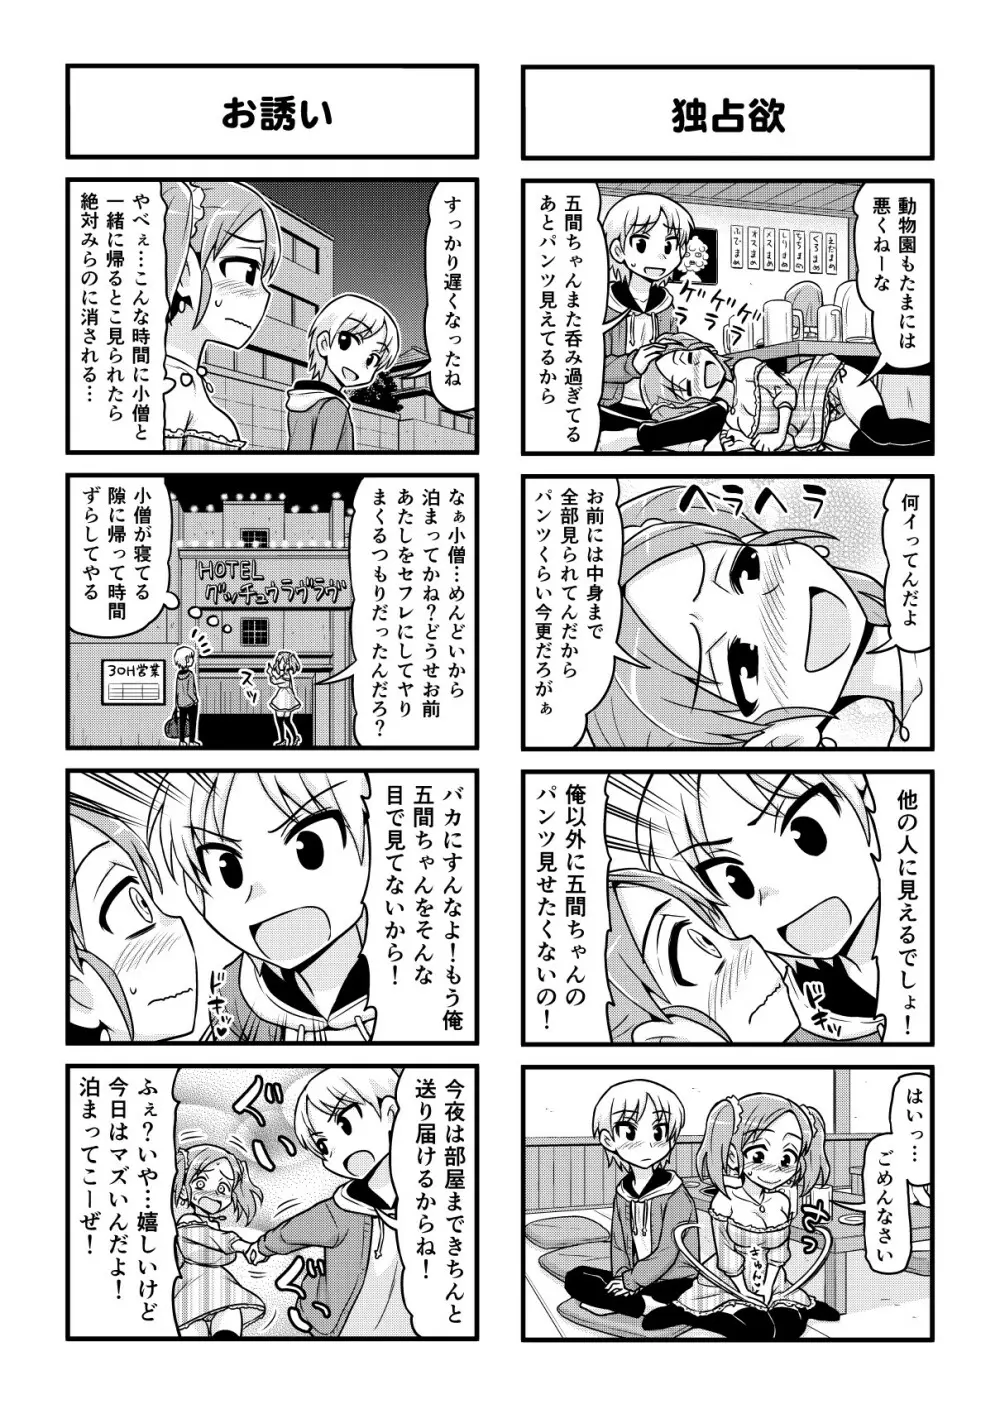 のんきBOY 1-48 - page348